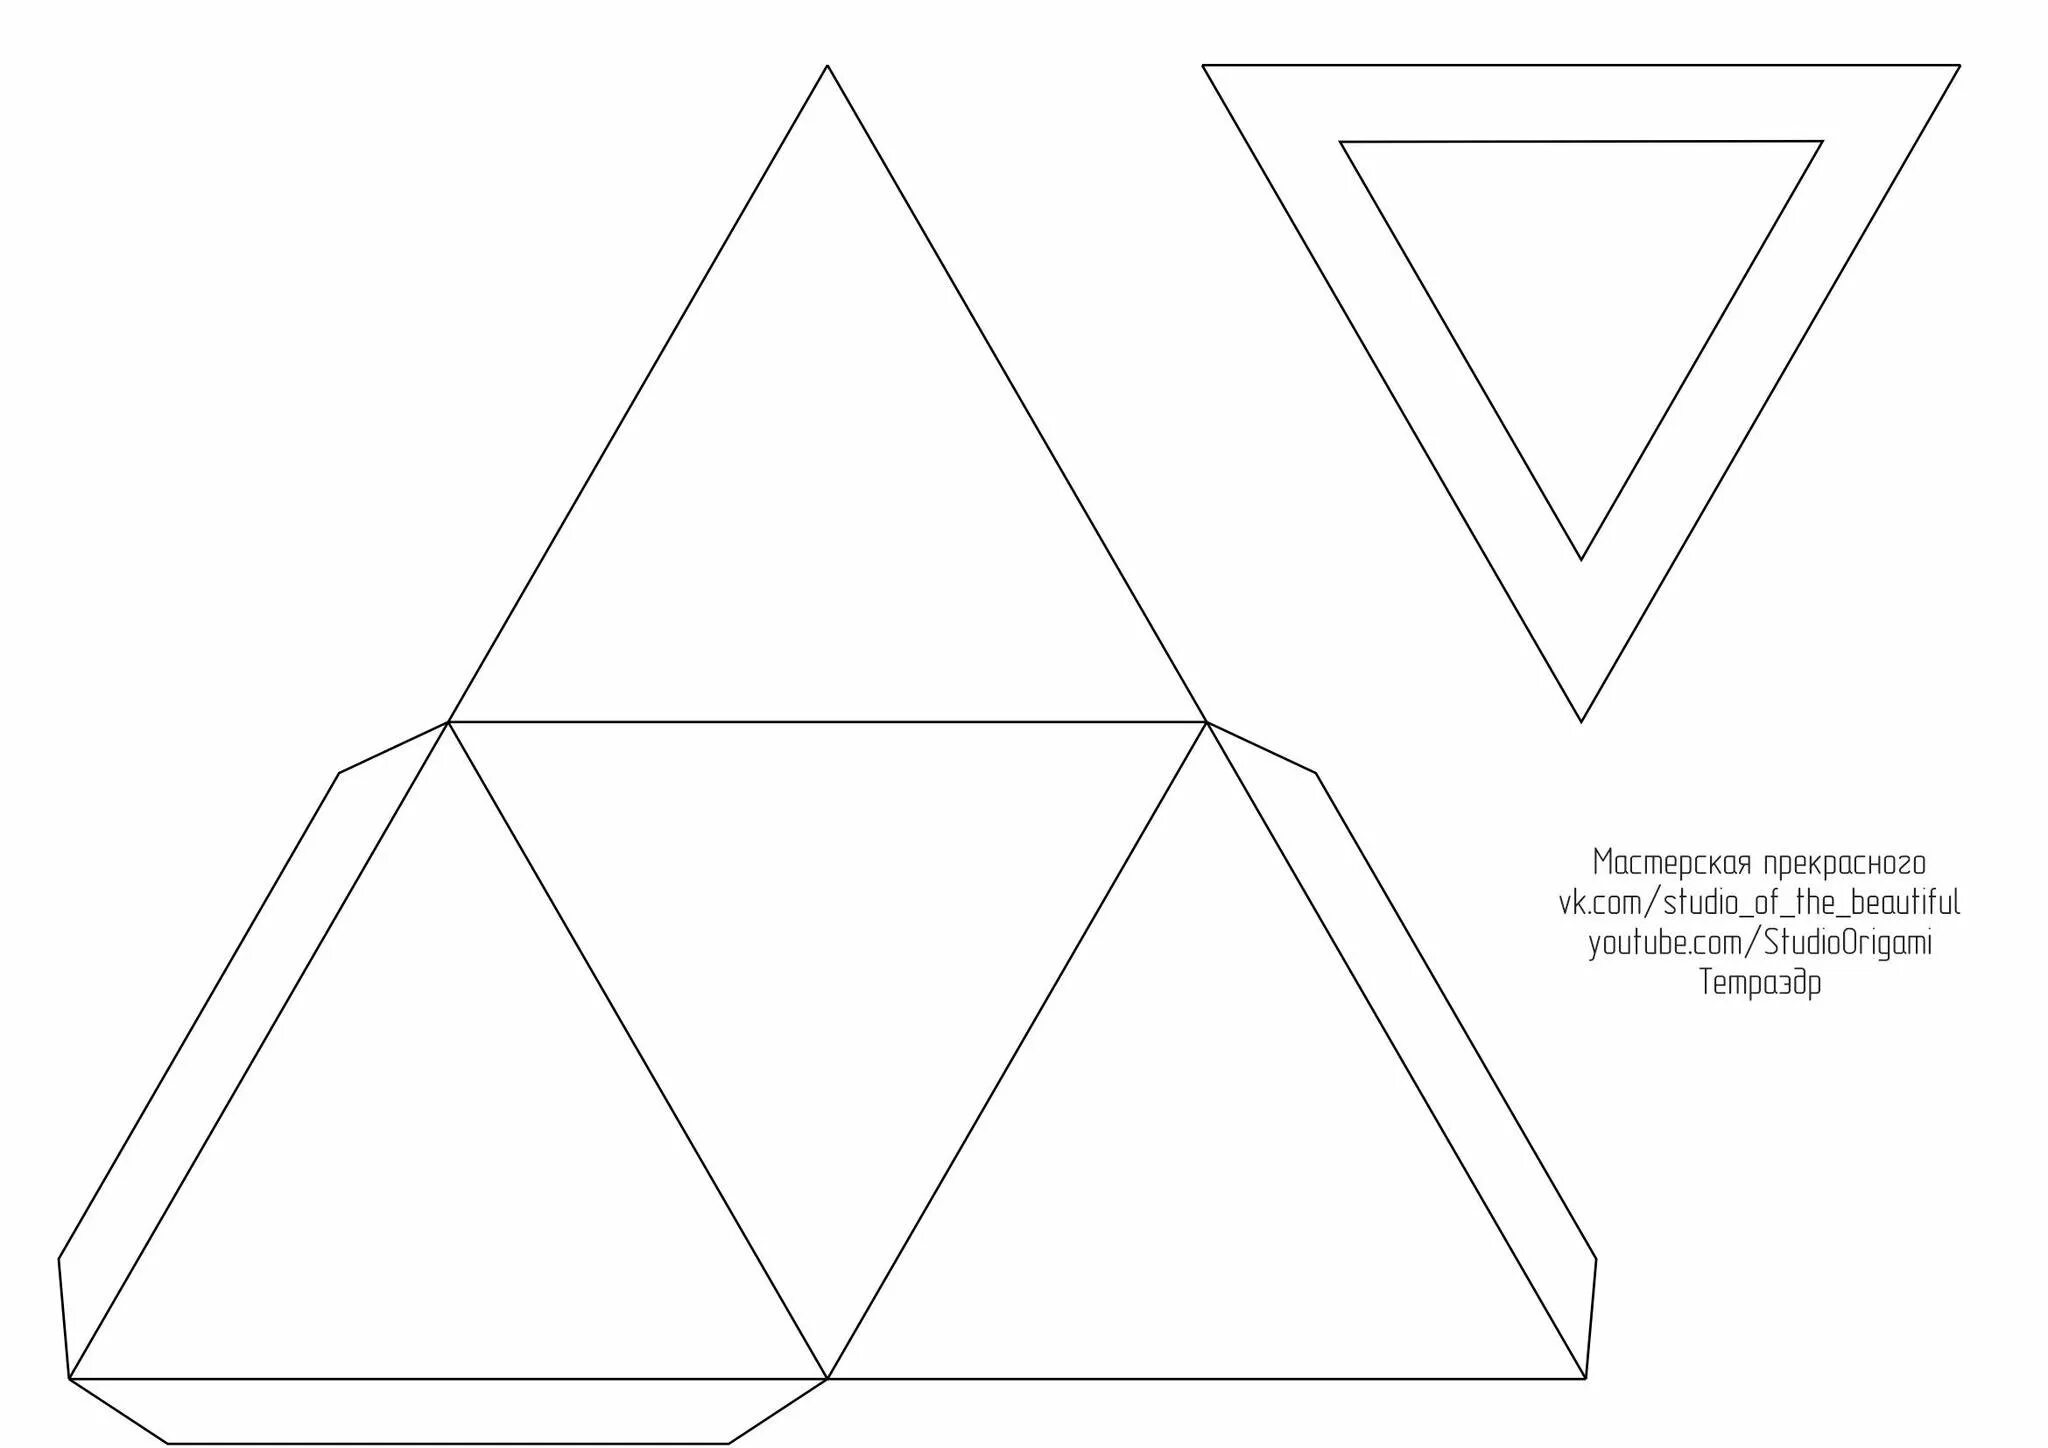 Развертка правильного тетраэдра для склеивания. Тетраэдр из а4. Разветка правильноготетраэдра. Правильный тетраэдр развертка для склеивания а4.